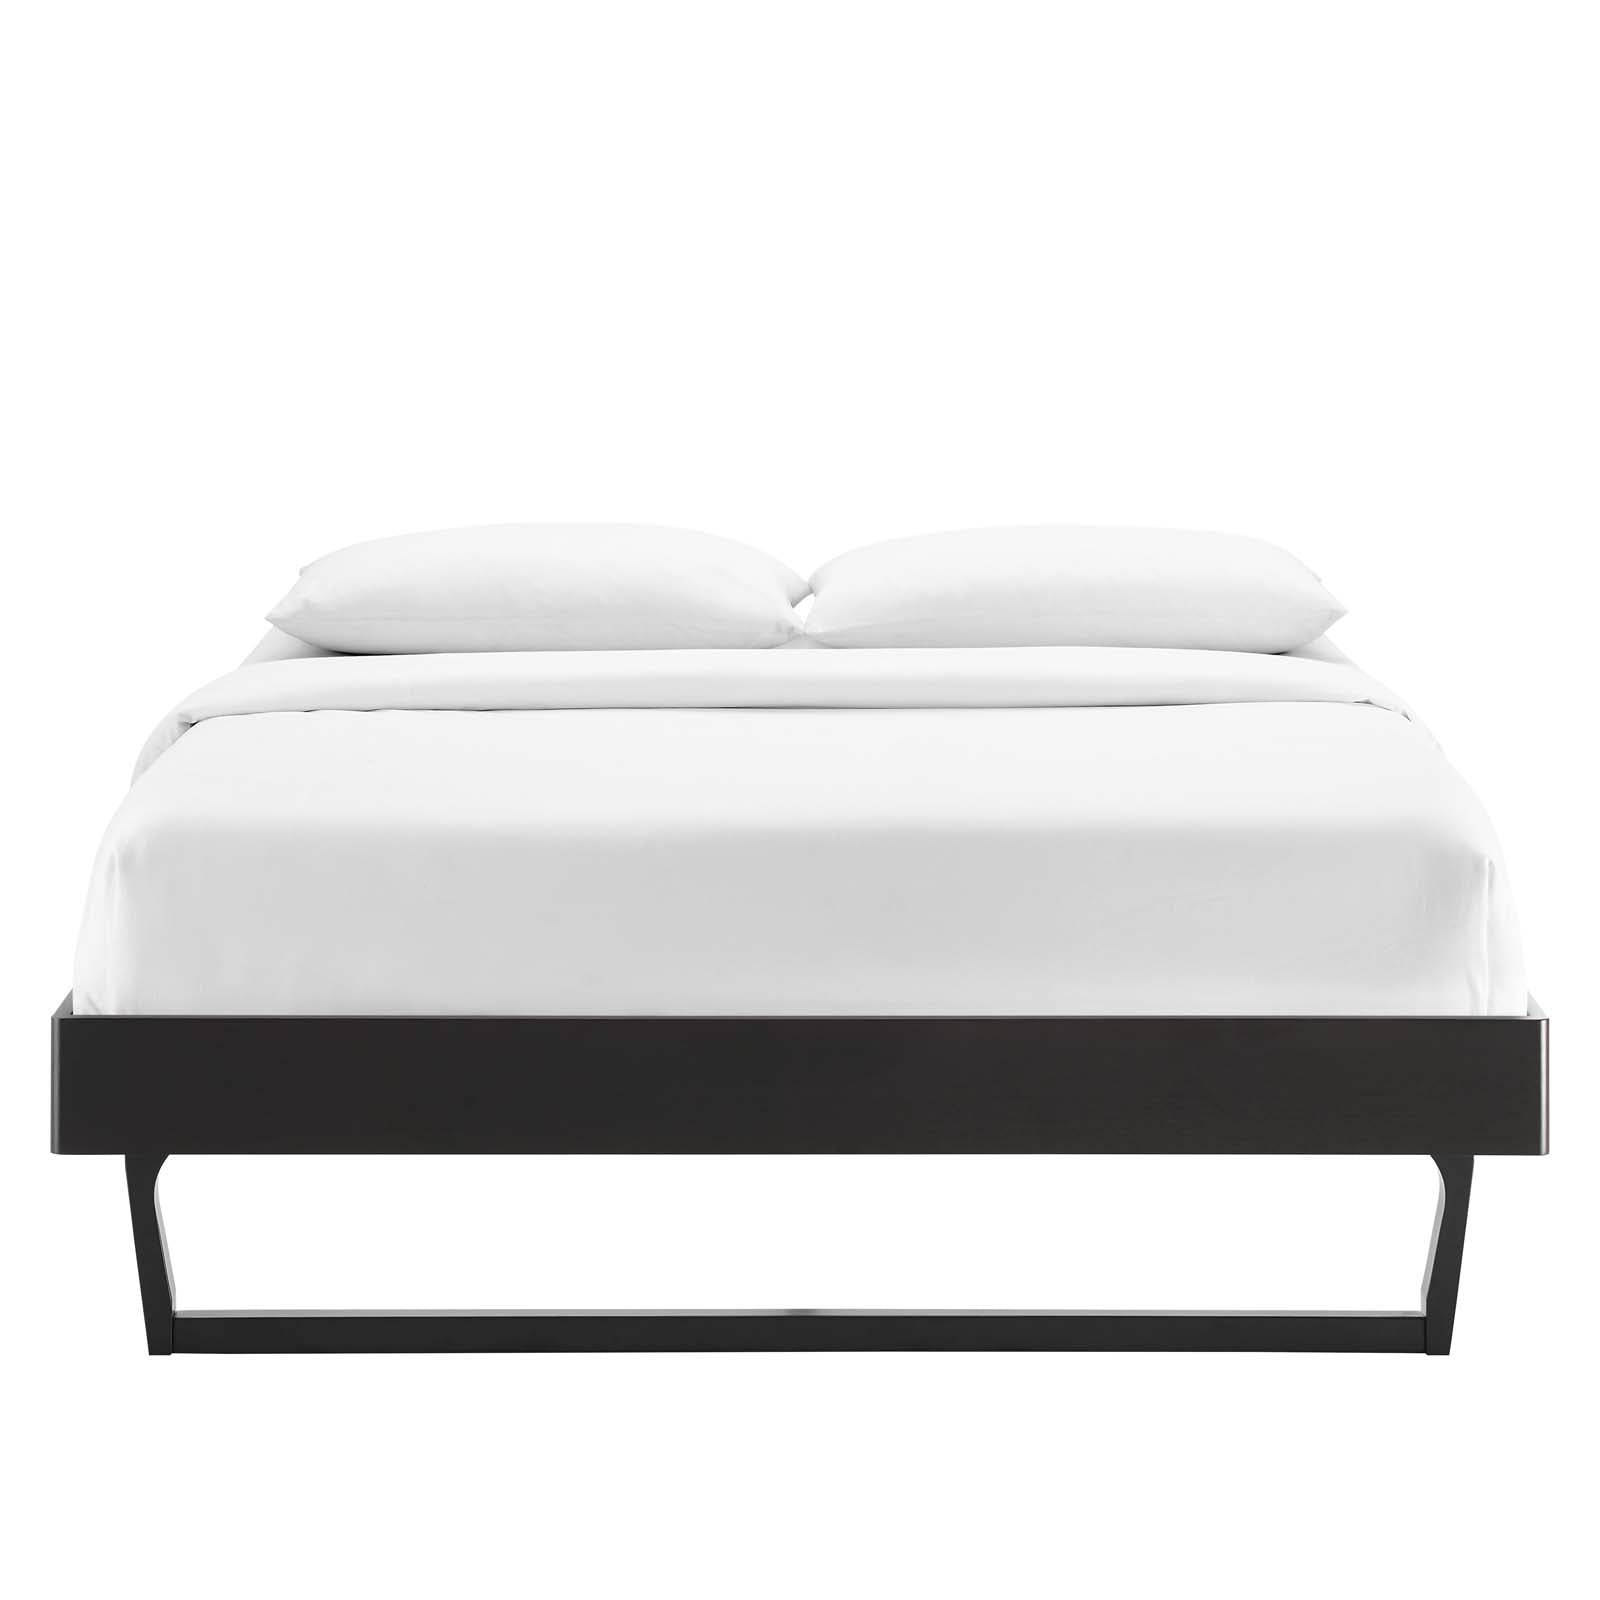 Modway Beds - Billie Full Wood Platform Bed Frame Black